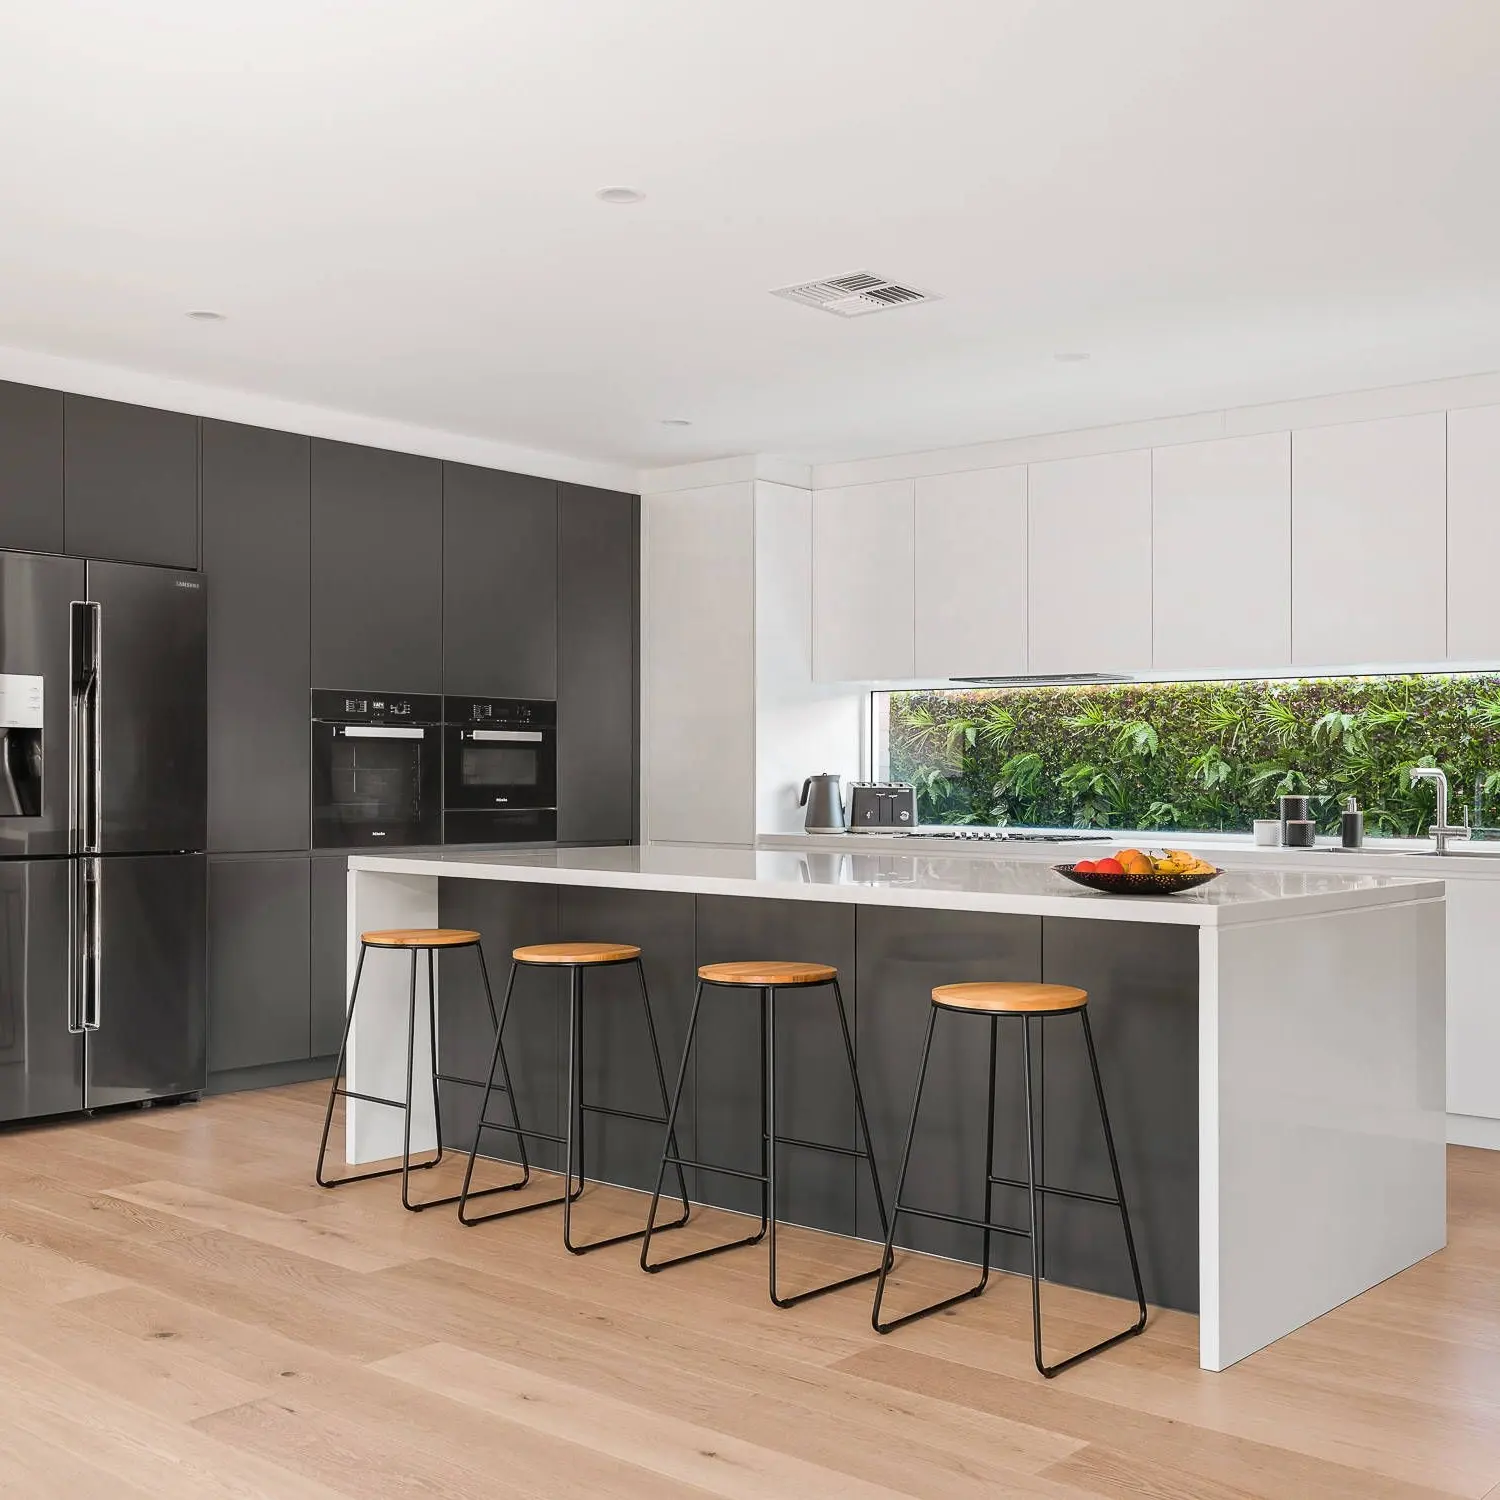 Nuevos diseños modernos de gabinetes de cocina negros acabados en laca mate de chapa de madera